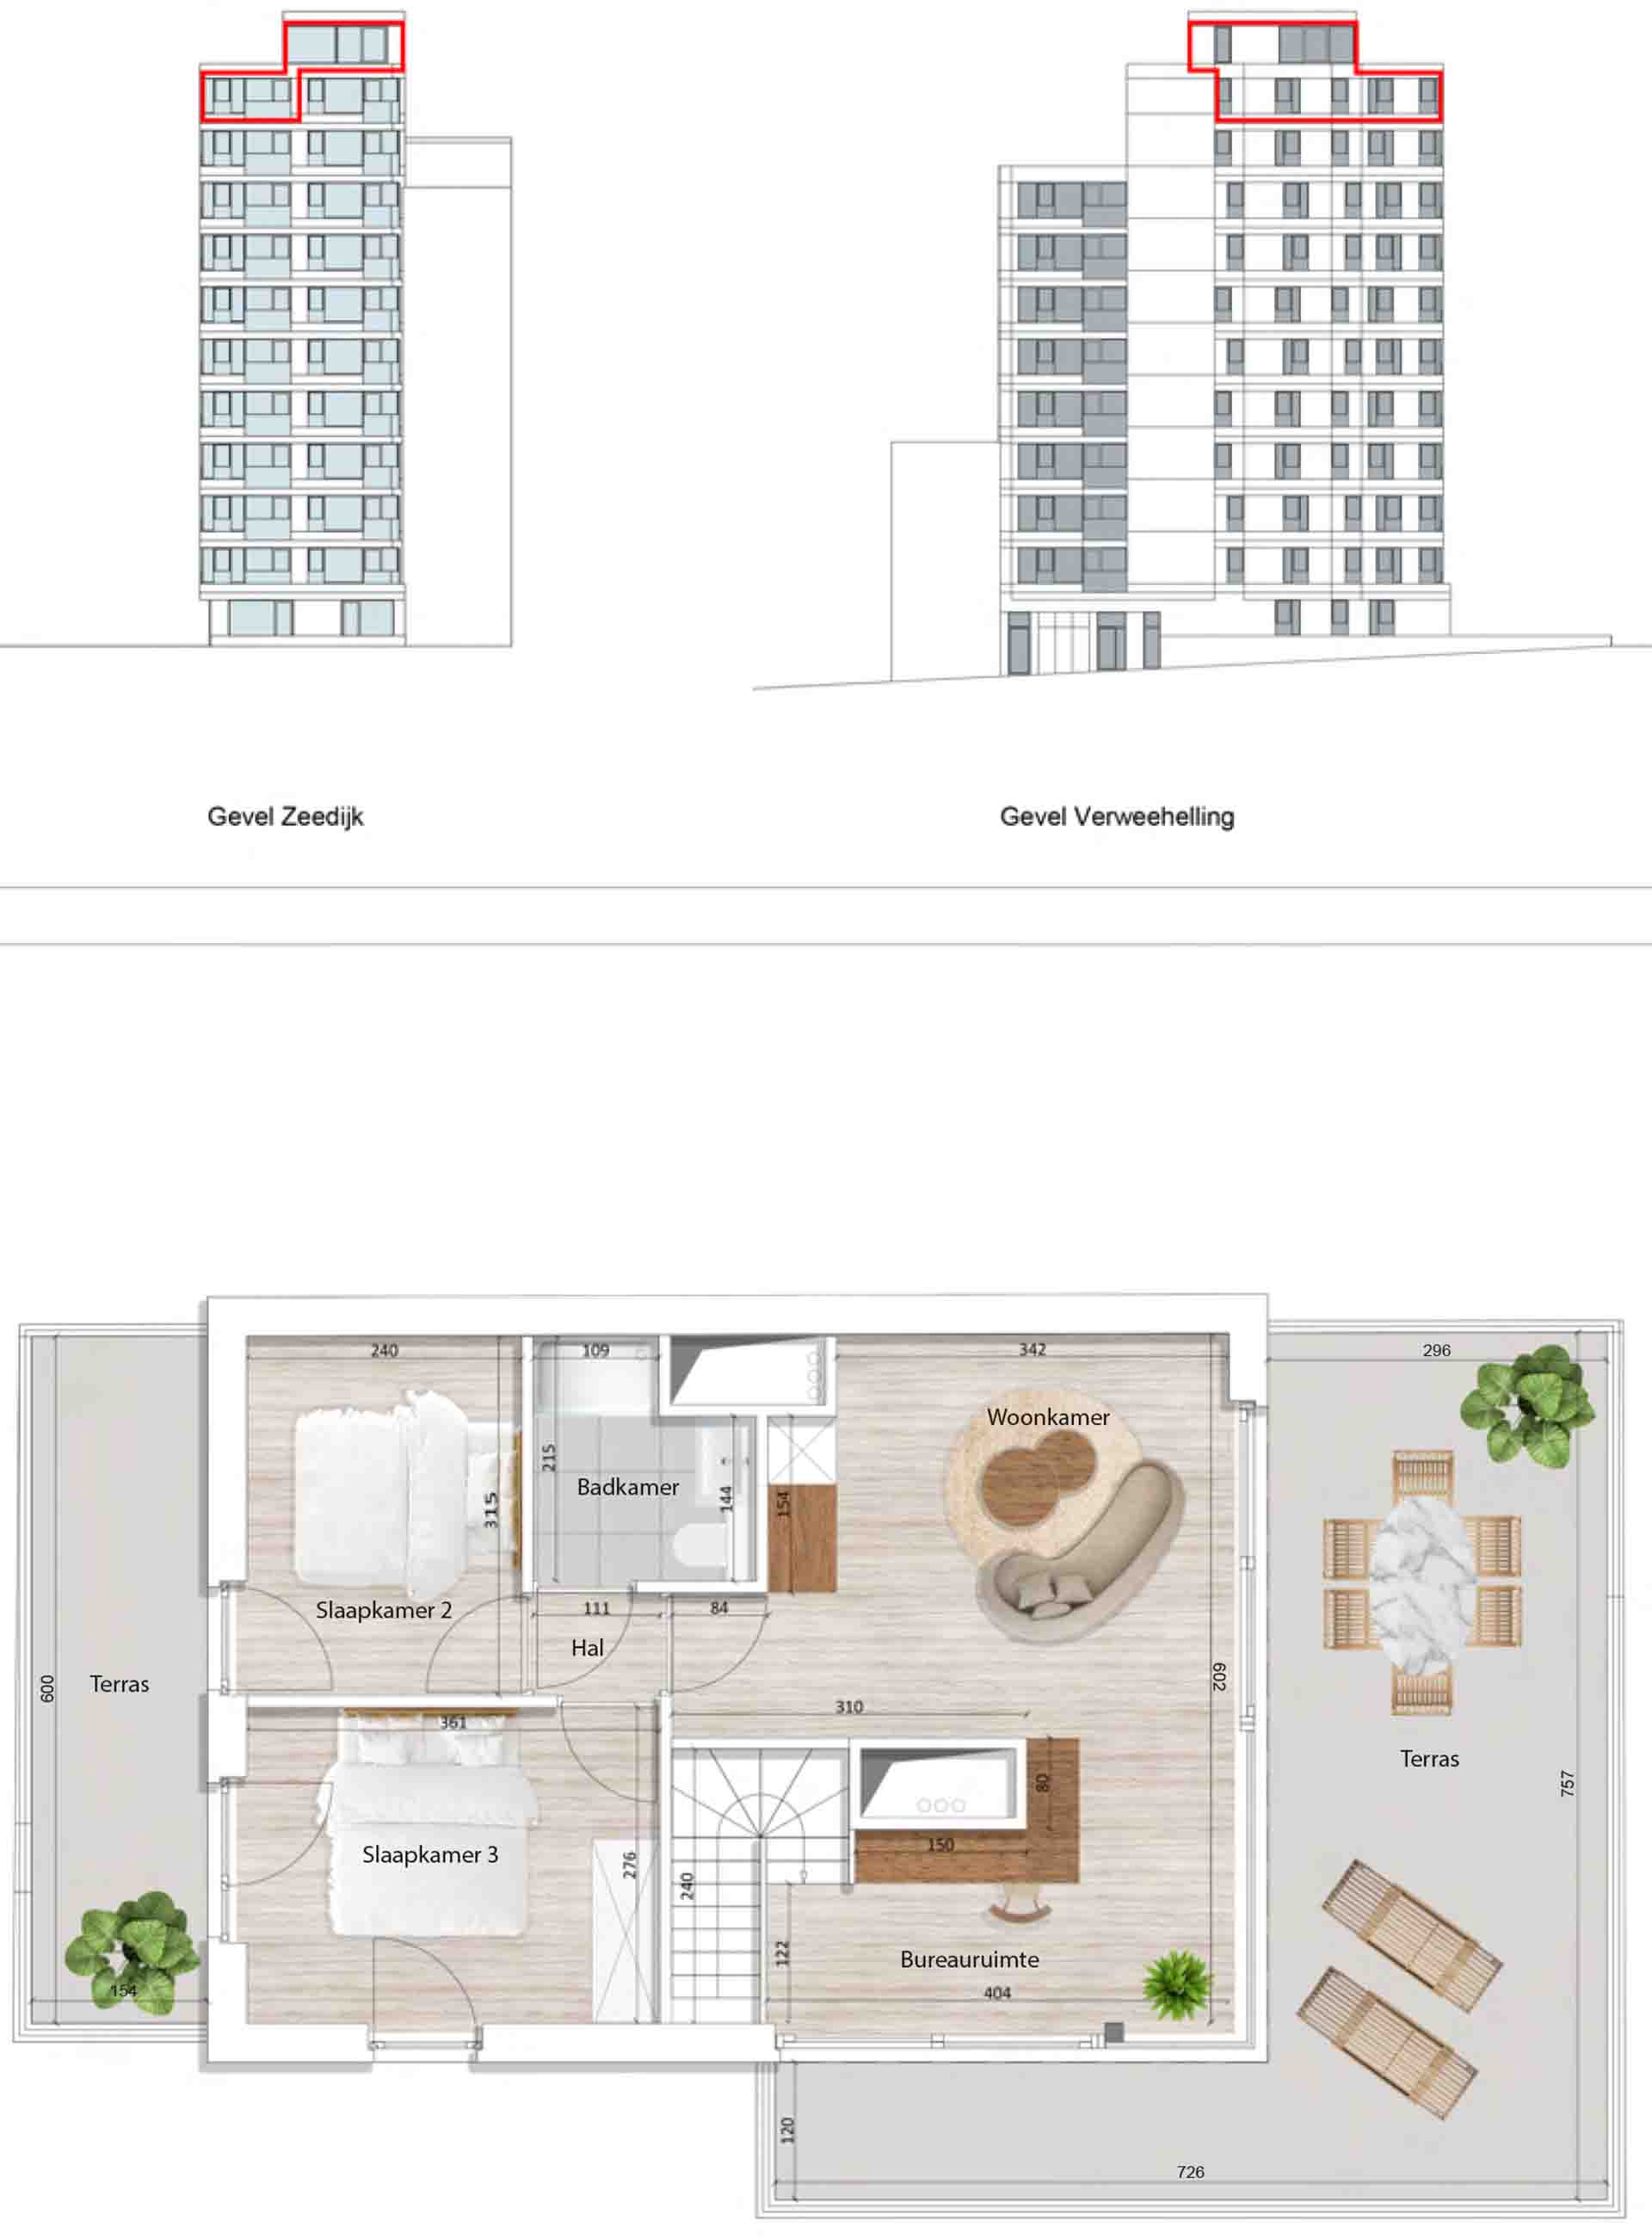 Residentie <br/> Pier - image appartement-te-koop-blankenberge-residentie-pier-plan-1001-variant-1-boven on https://hoprom.be